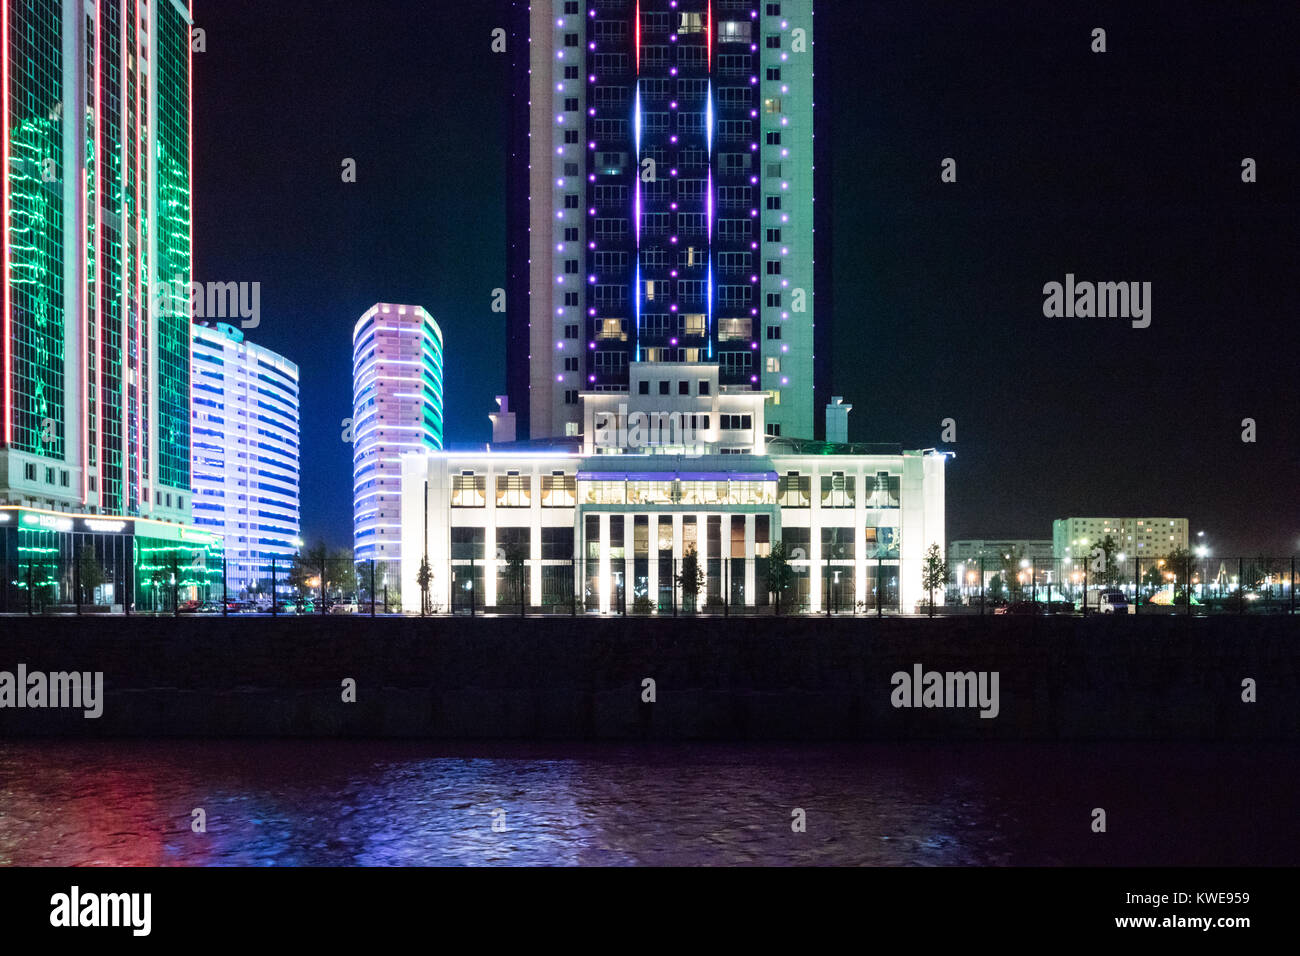 Grozny City towers illuminated at night, Grozny, Checnnya Stock Photo